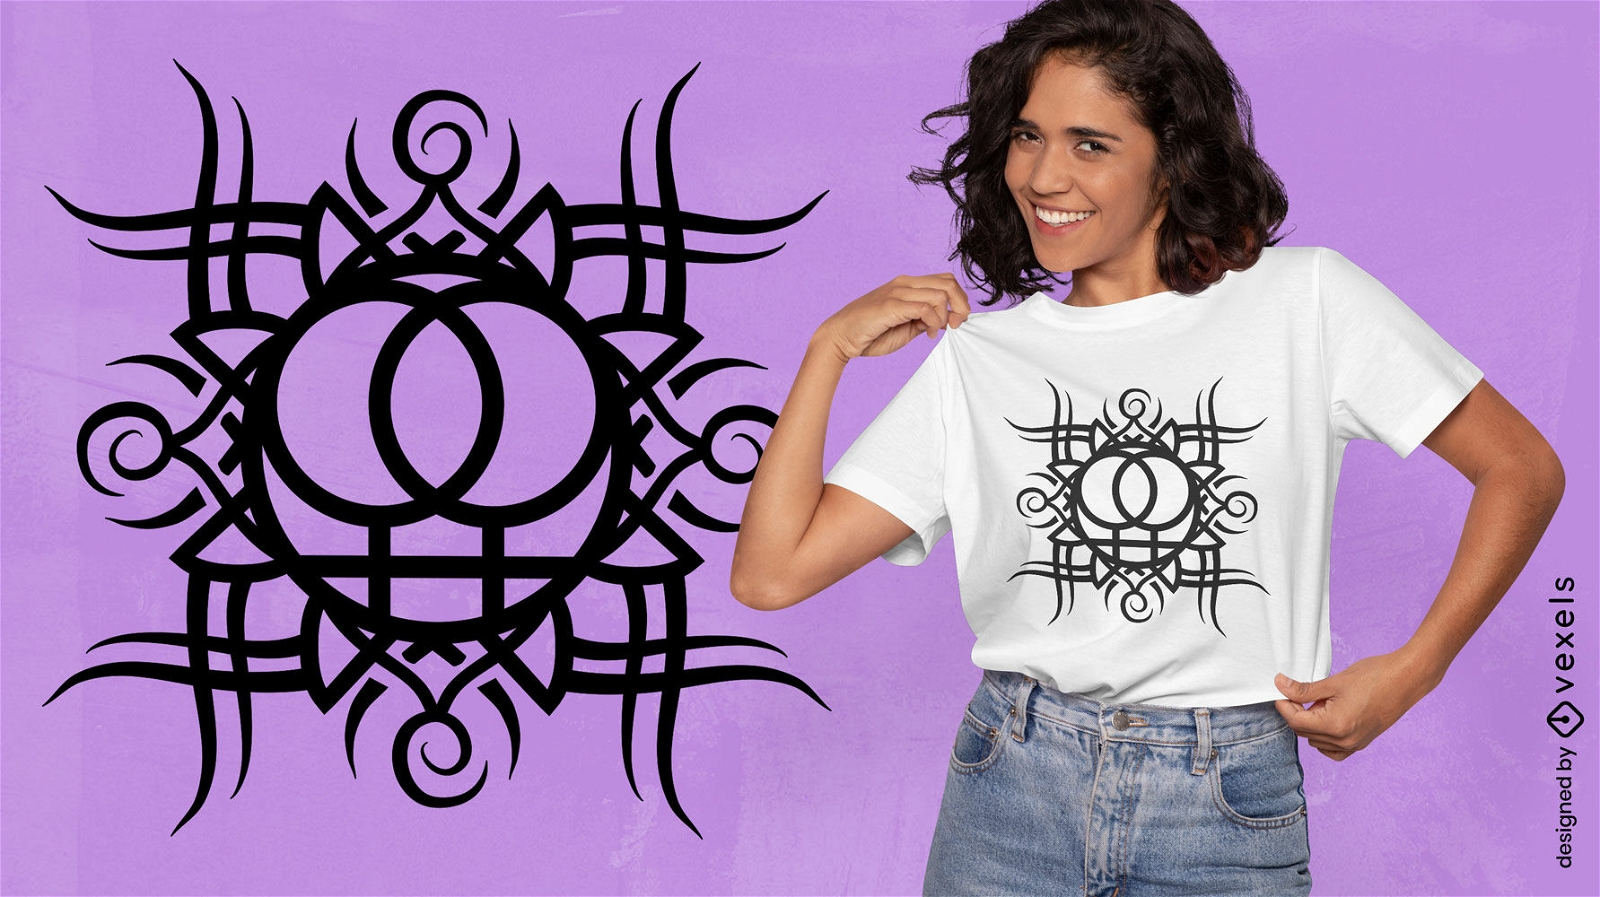 Design de camiseta de s?mbolo tribal feminista